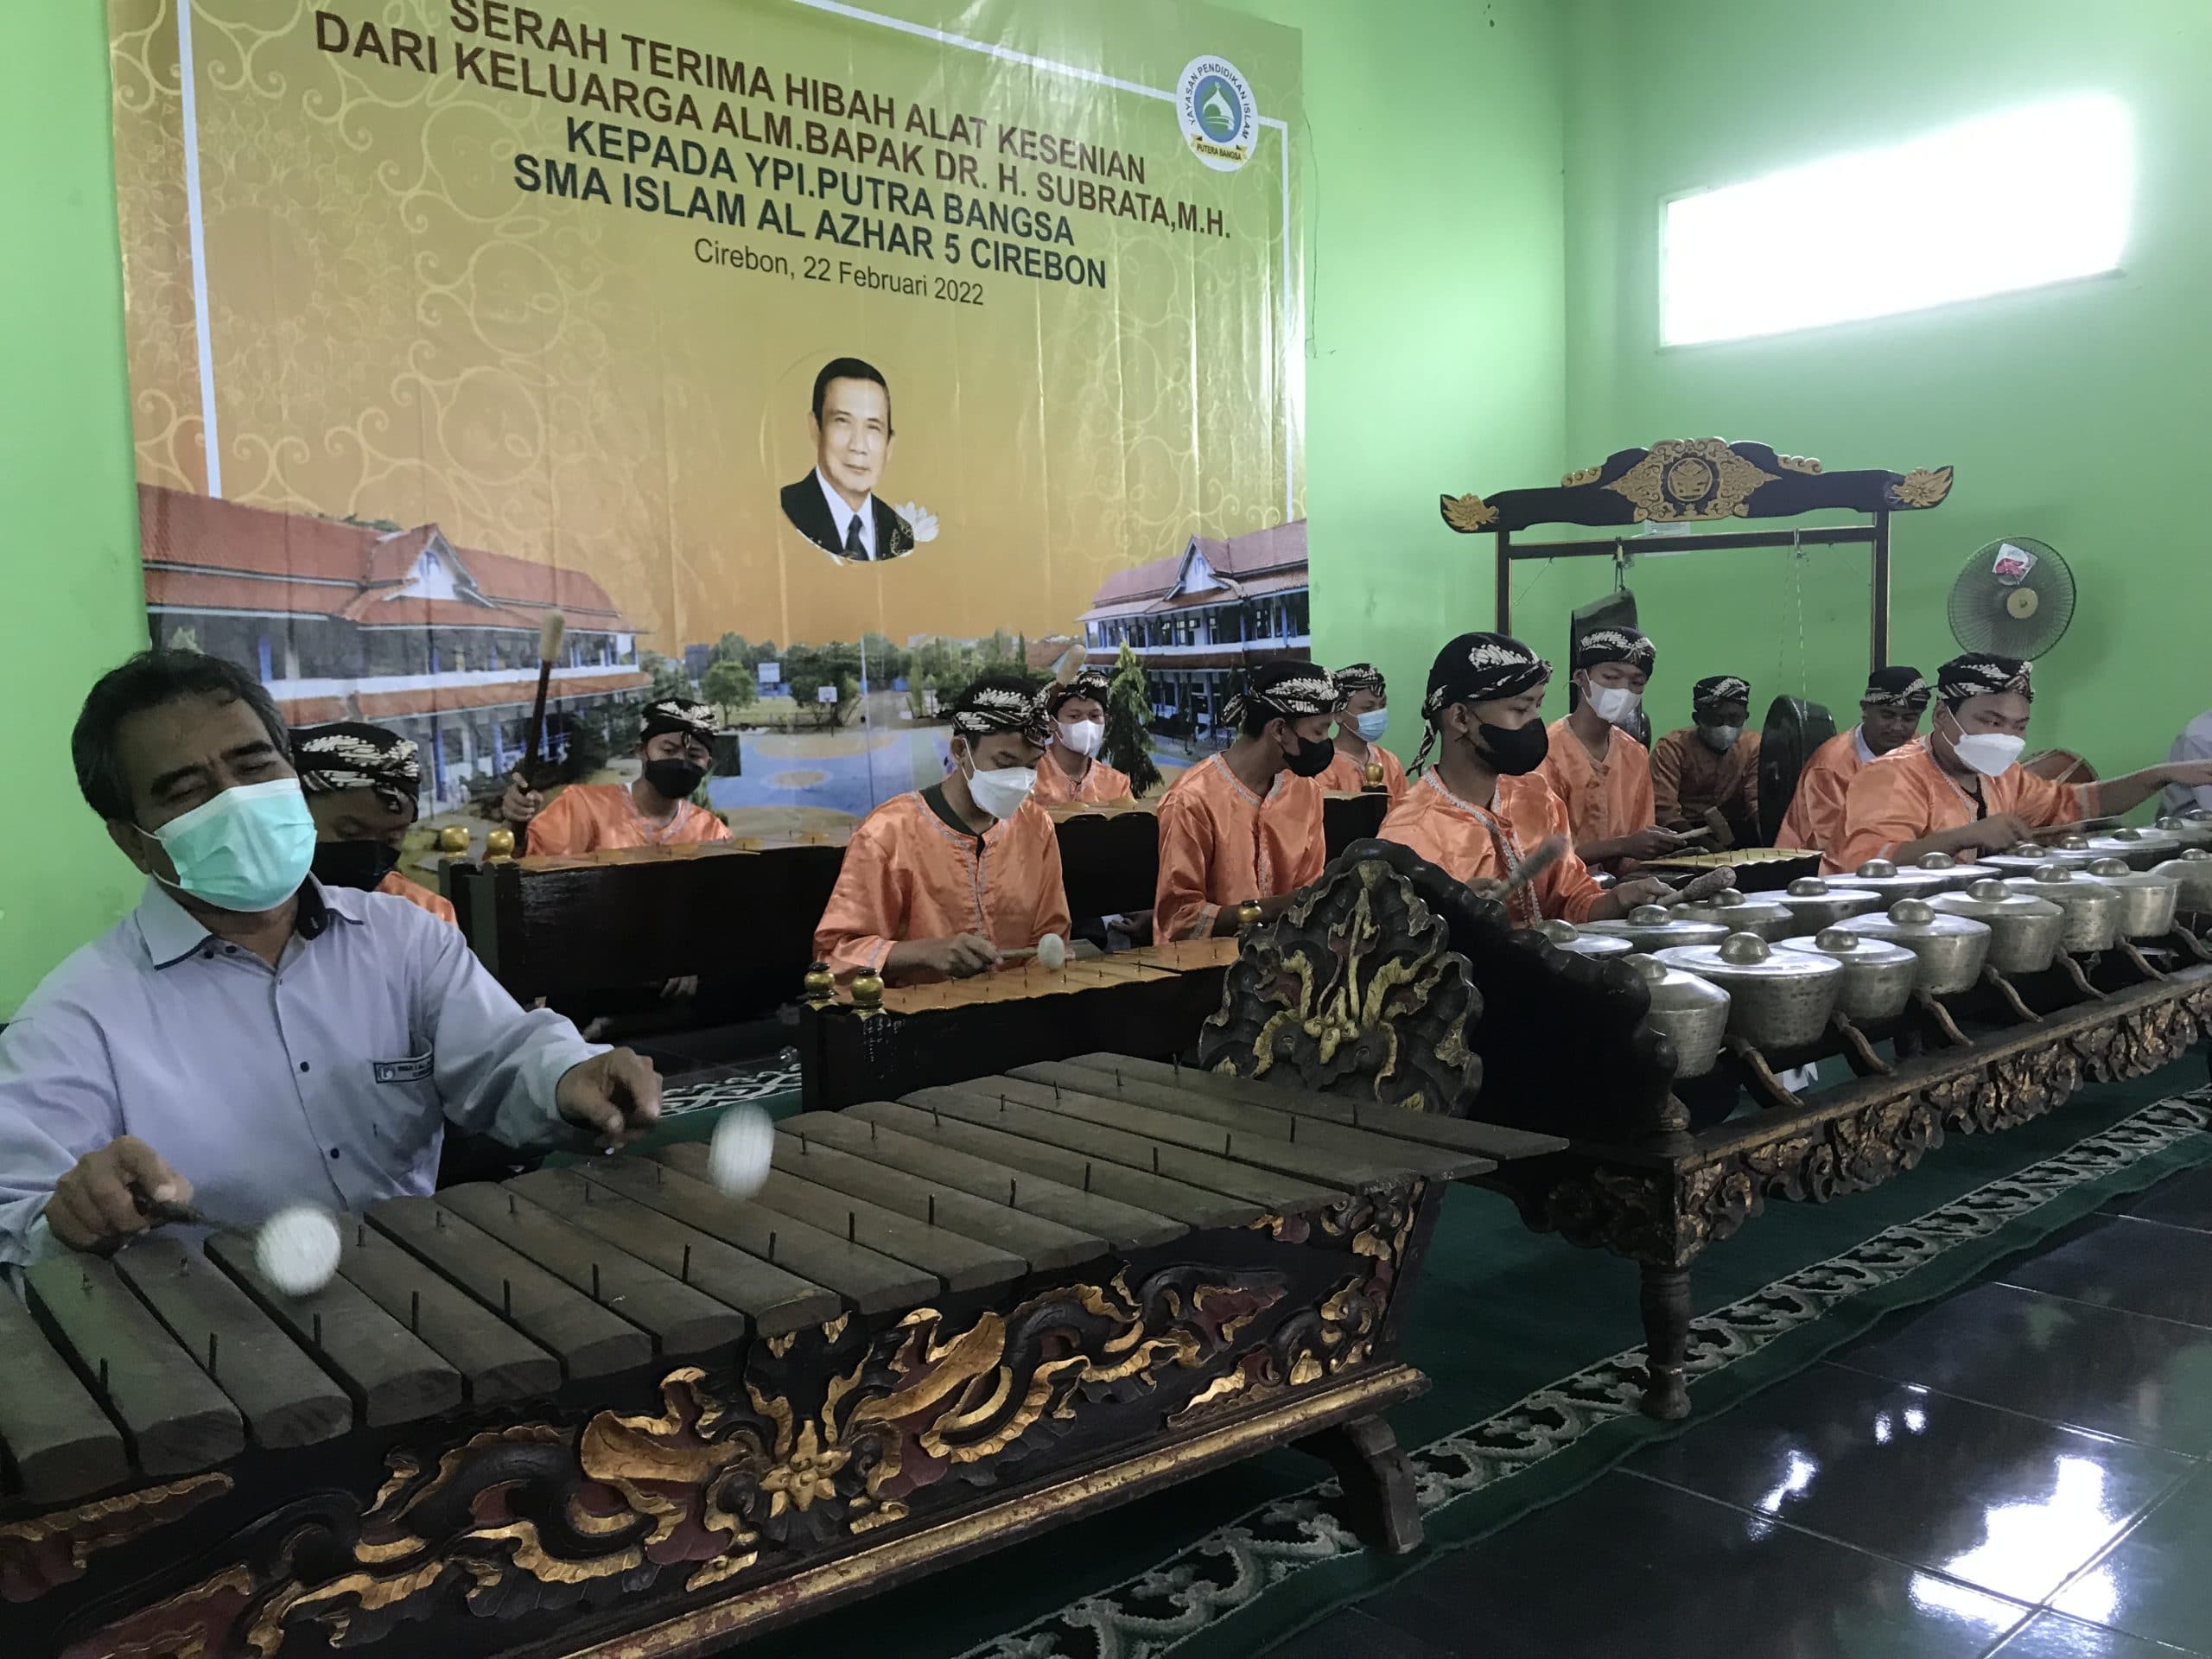 SMA Islam Al Azhar 5 Cirebon Terima Hibah Alat Kesenian